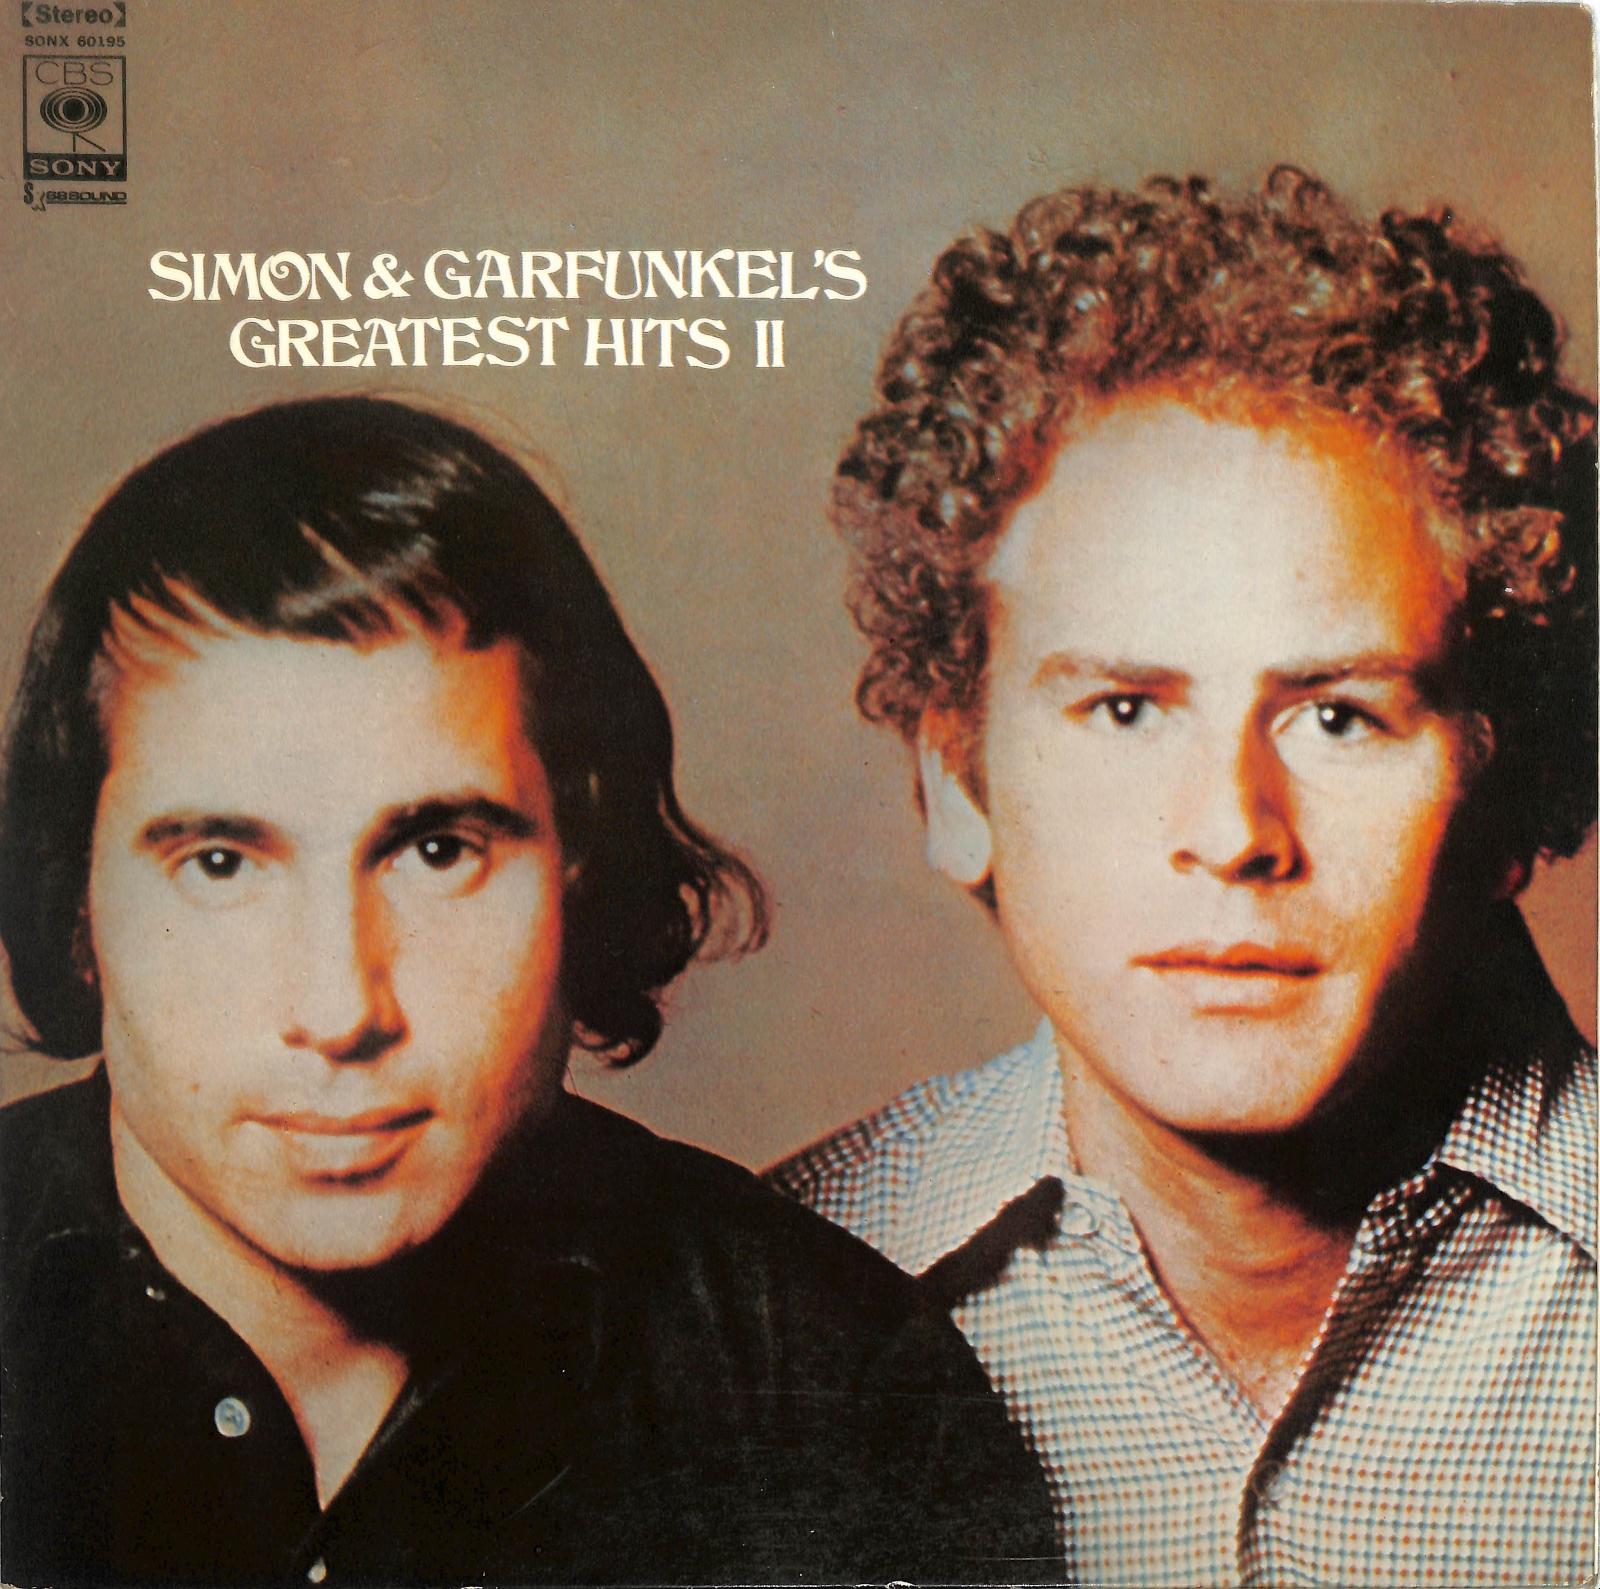 SIMON AND GARFUNKEL - Simon And Garfunkel's Greatest Hits II